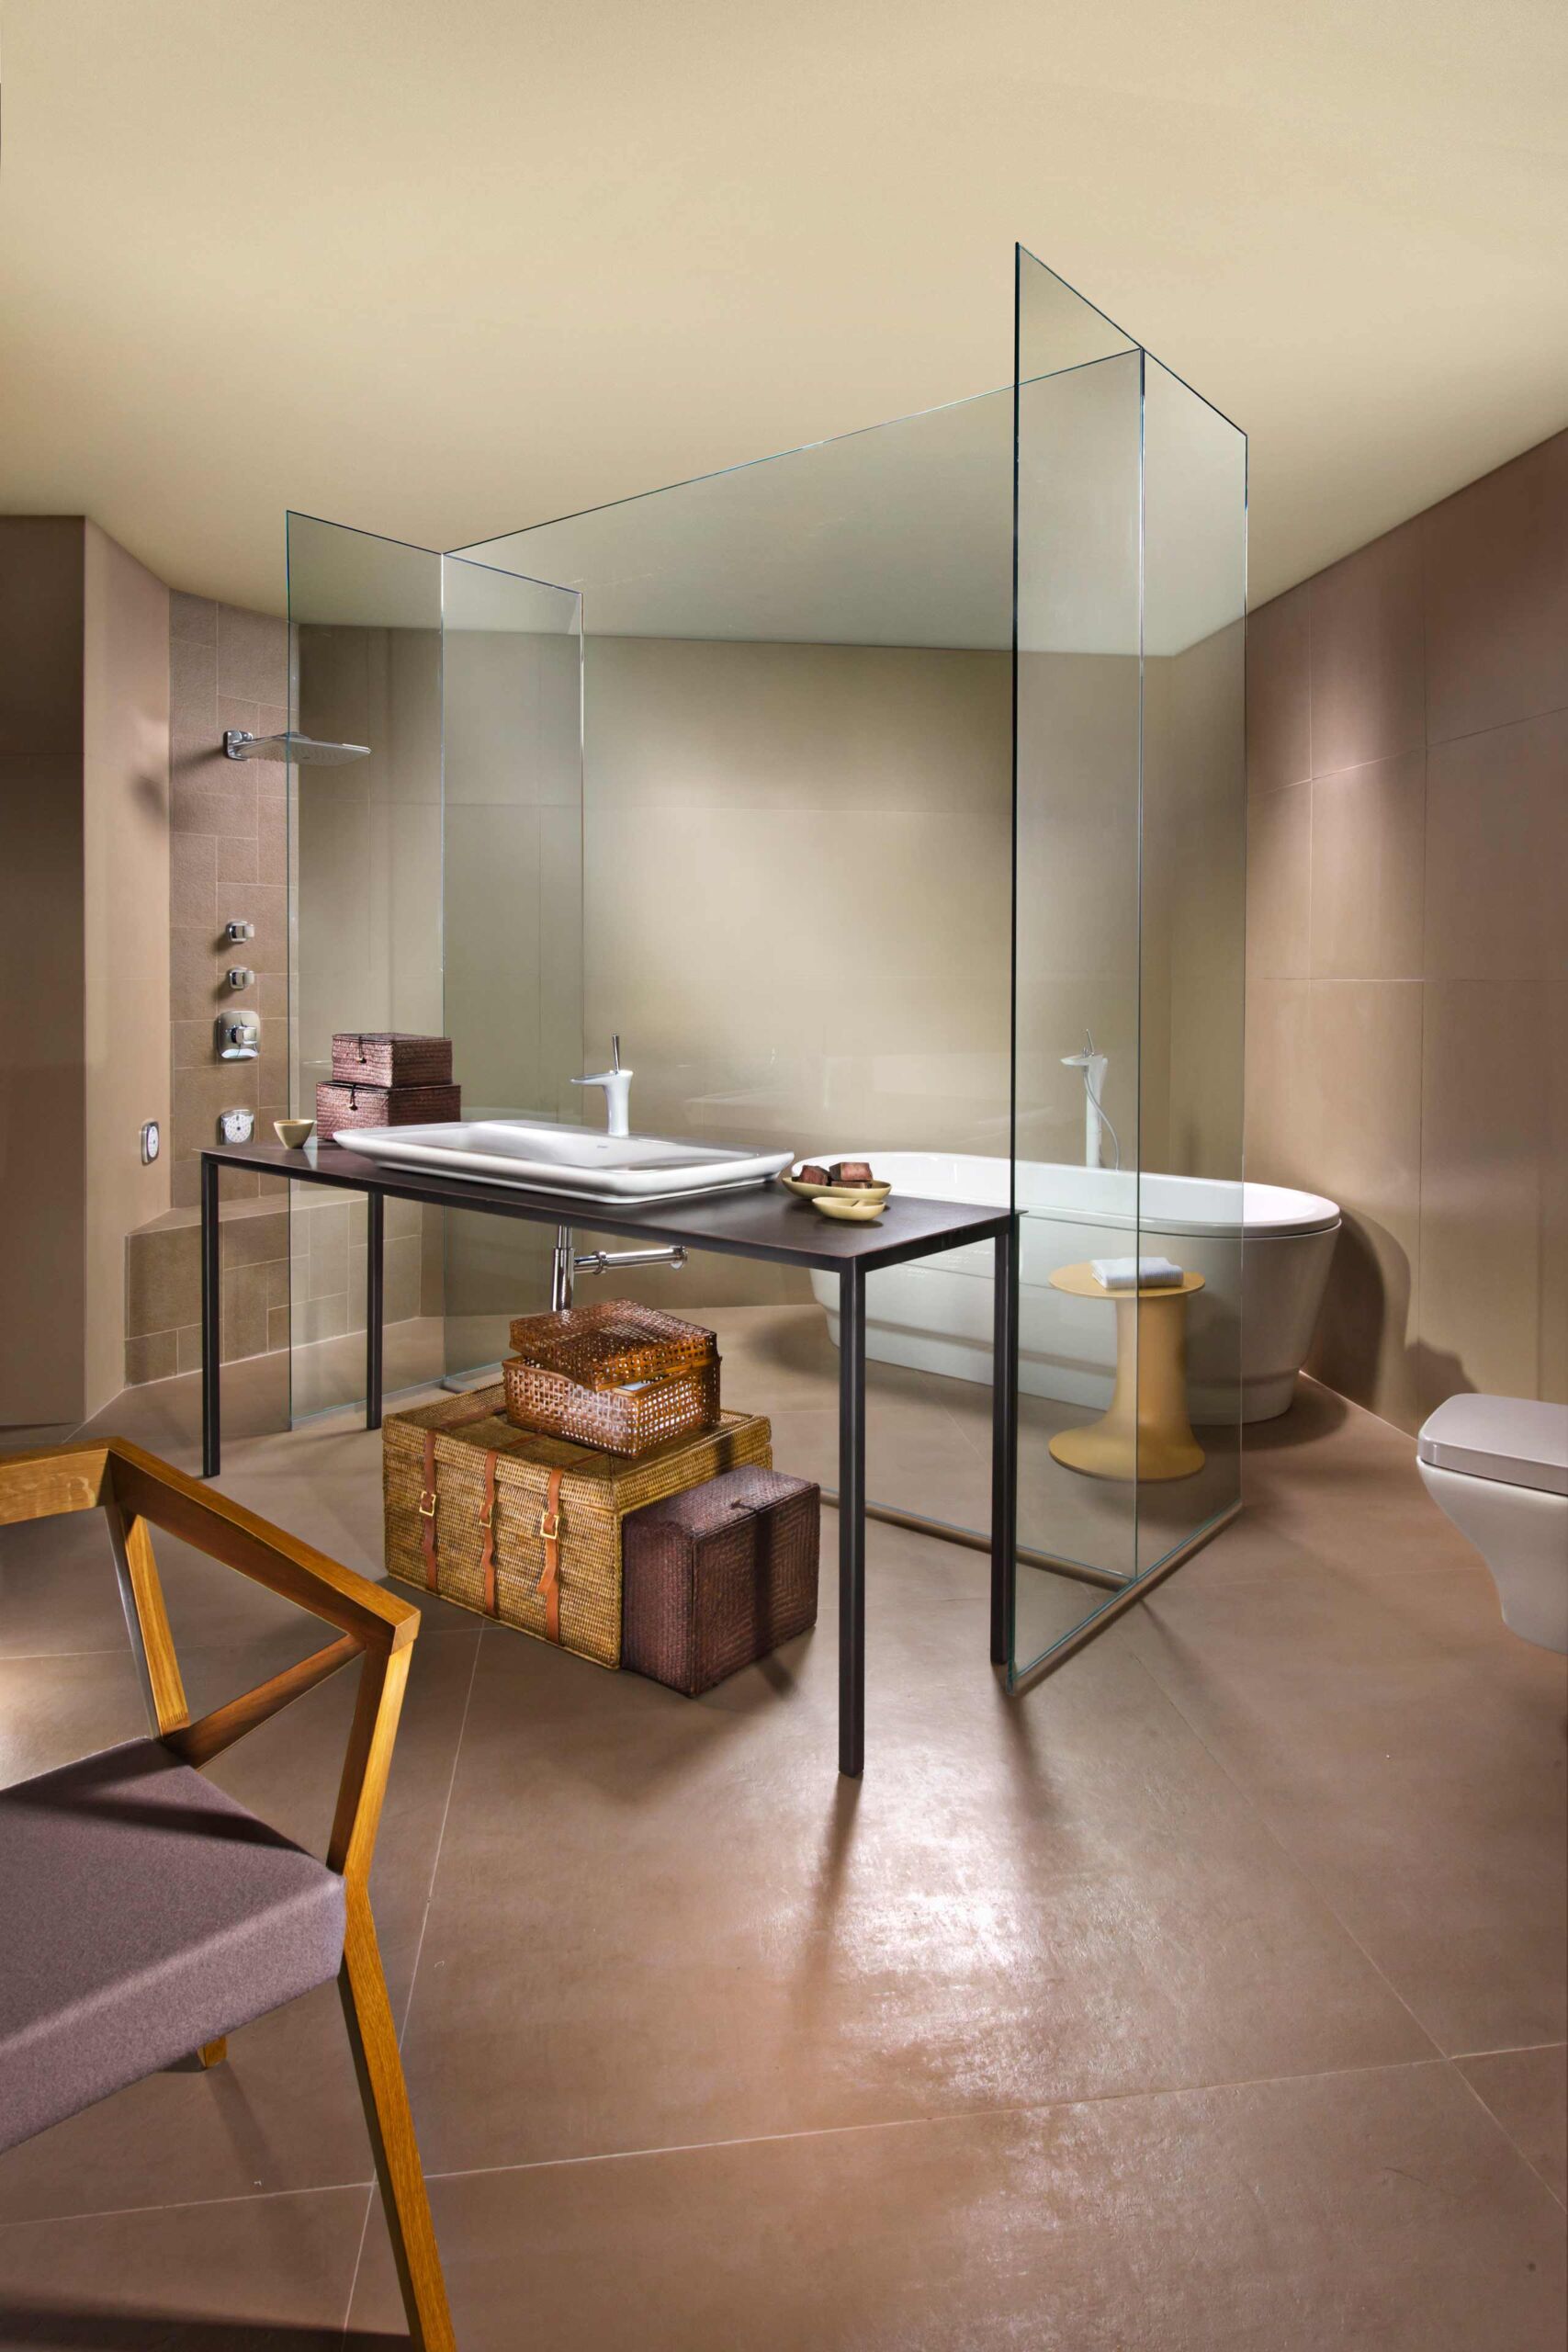 צילום עיצוב פנים בגווני חומים באולם תצוגה של זהבי עצמון חדר אמבטיה עם מקלחת גשם פרגוד זכוכית צורת H